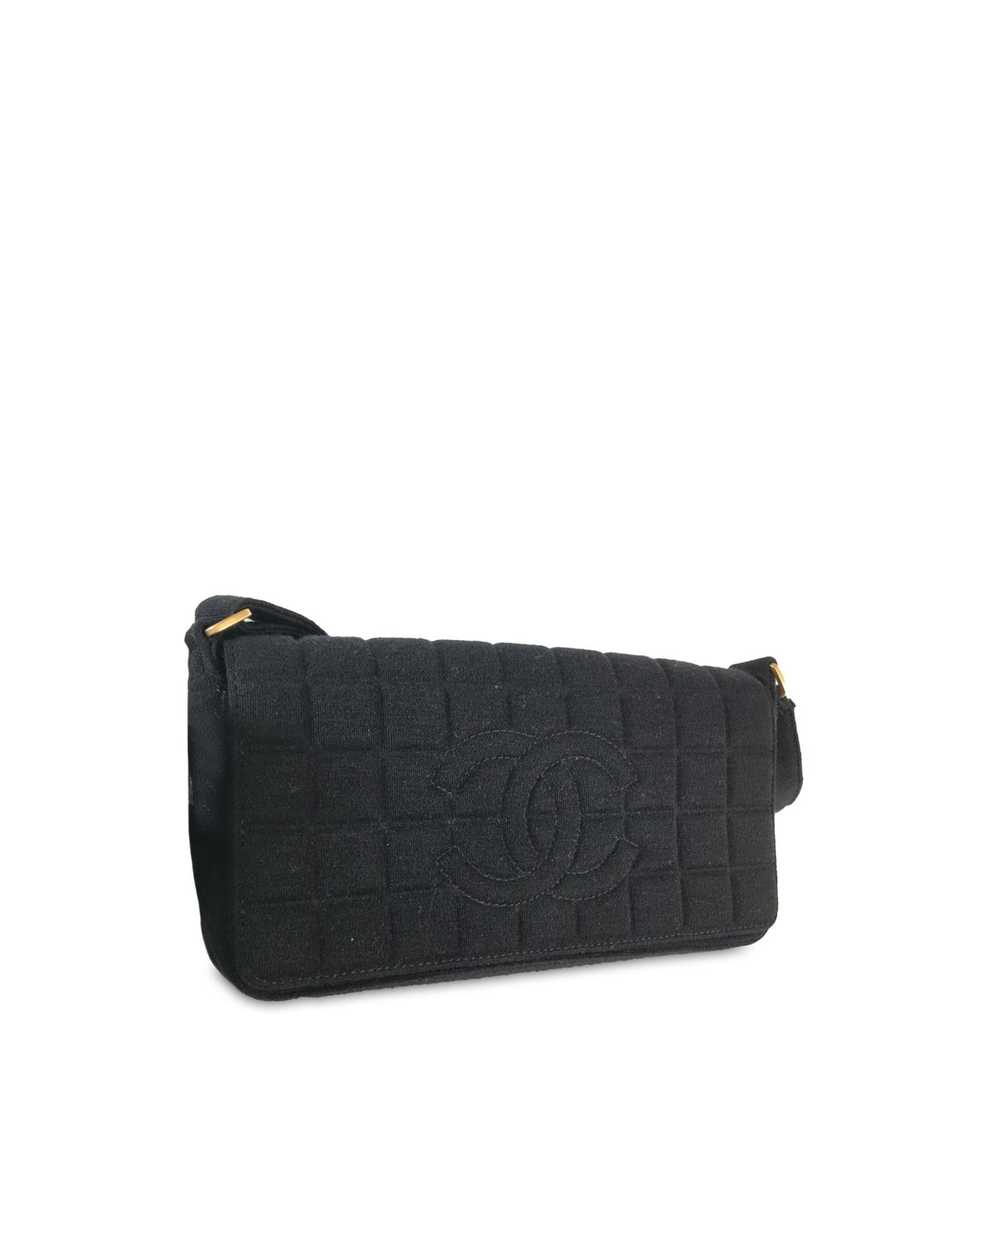 Chanel Chocolate Bar Flap Shoulder Bag - image 2